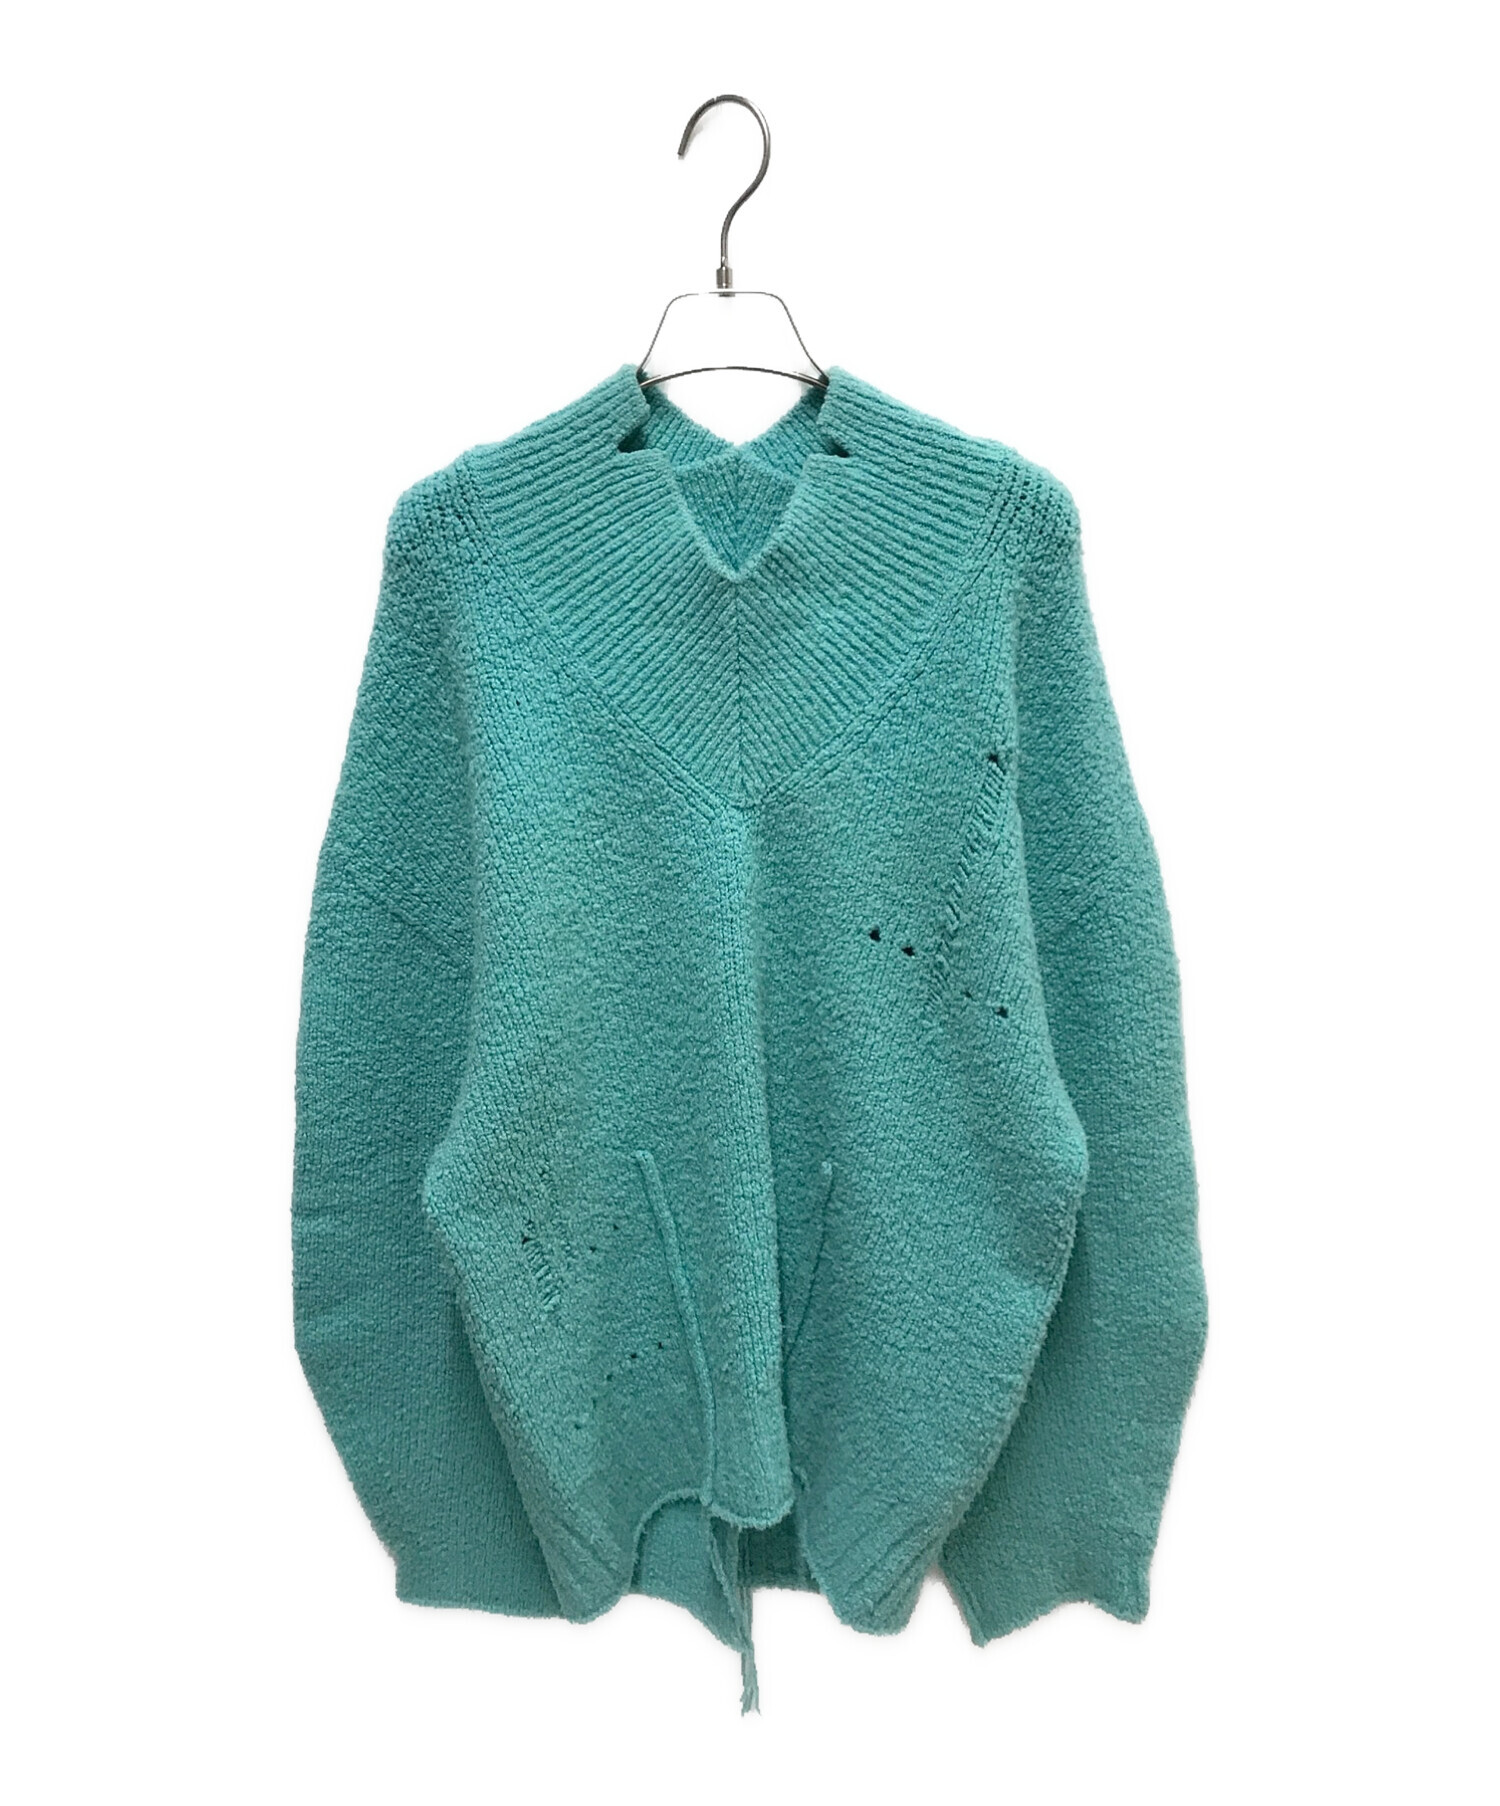 IRENE (アイレネ) Whole Garment Knit Tops グリーン サイズ:36